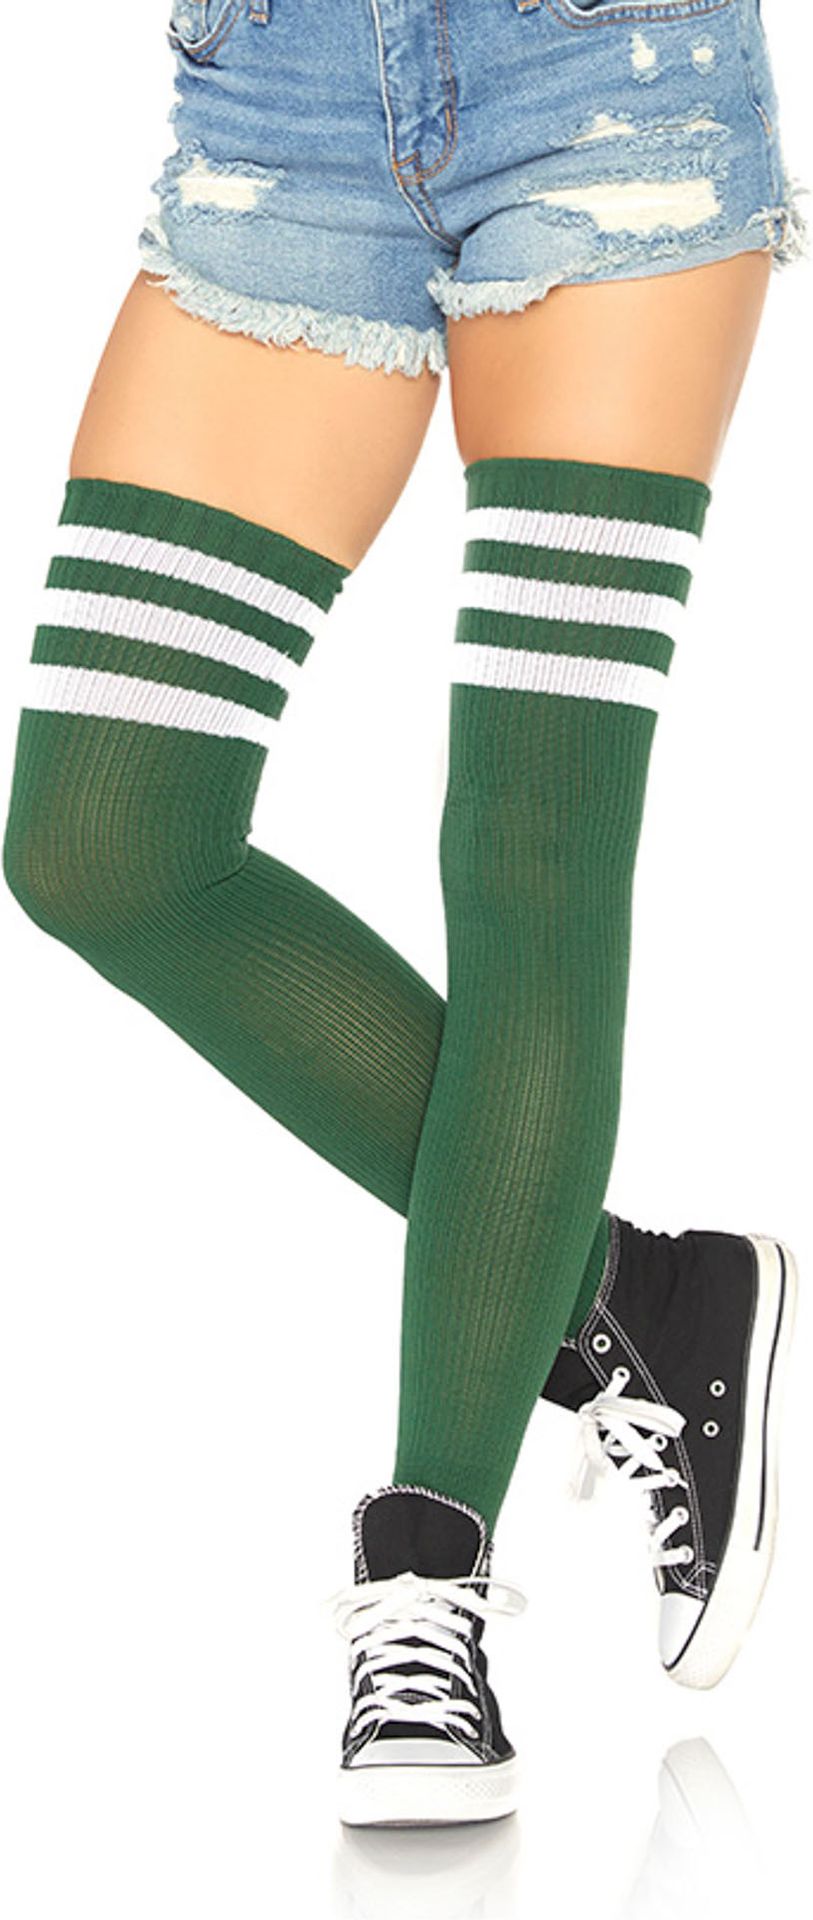 Groene atleetsokken met strepen